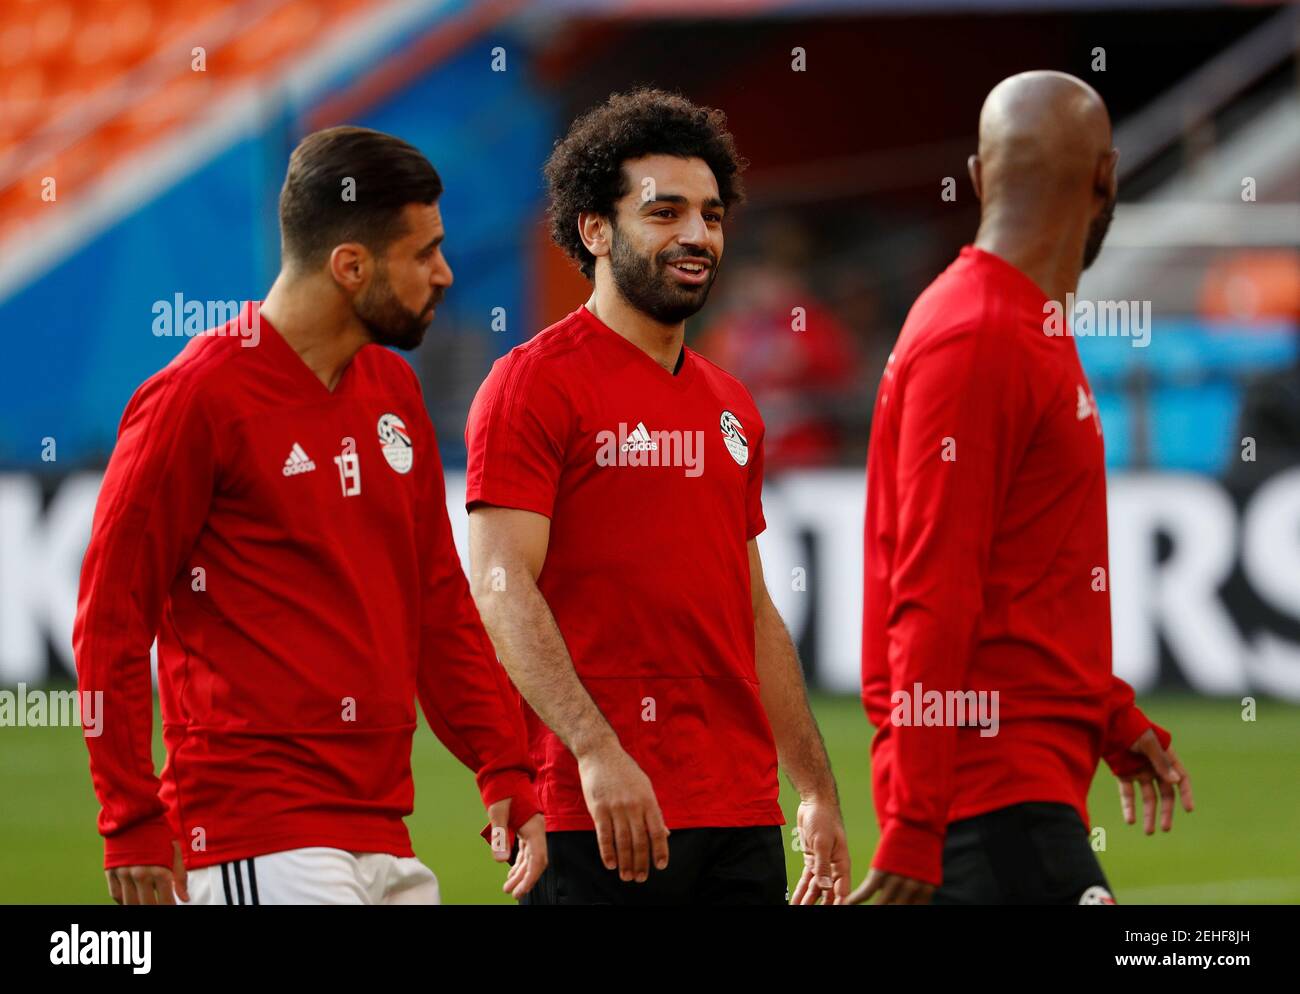 Soccer Football - World Cup - Egypt Training - Ekaterinburg Arena, Yekaterinburg, Russia - June 14, 2018   Egypt's Mohamed Salah during training   REUTERS/Damir Sagolj Stock Photo